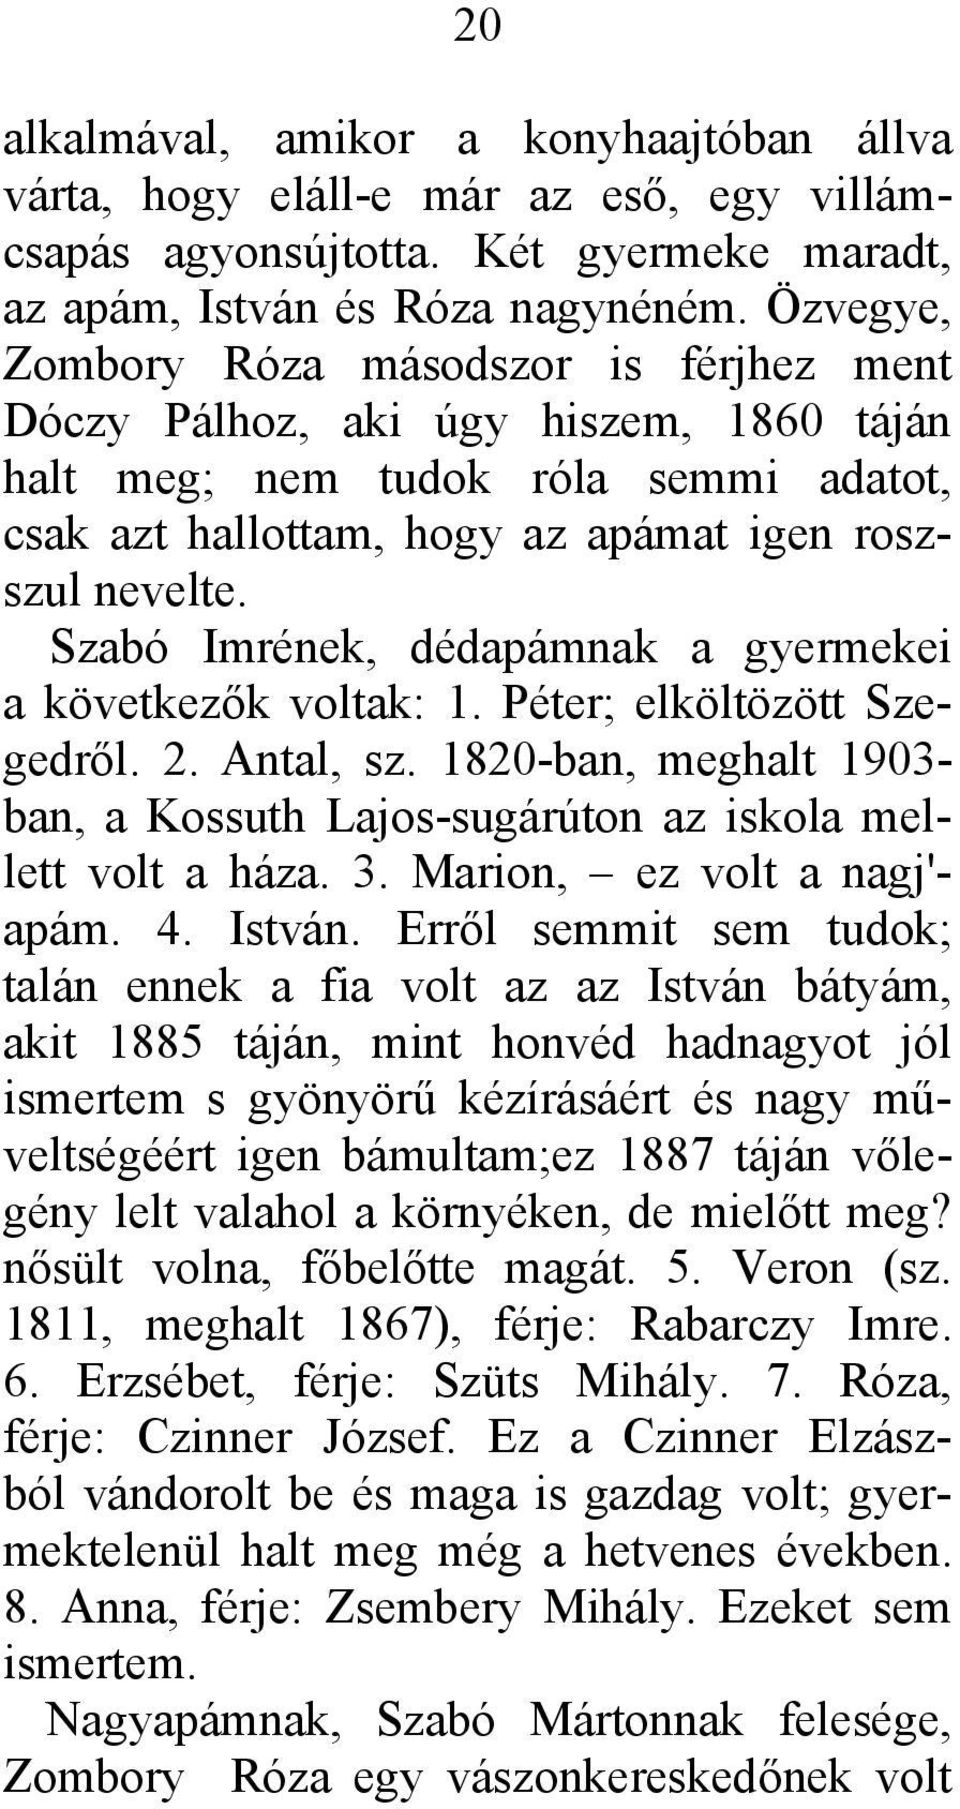 Szabó Imrének, dédapámnak a gyermekei a következők voltak: 1. Péter; elköltözött Szegedről. 2. Antal, sz. 1820-ban, meghalt 1903- ban, a Kossuth Lajos-sugárúton az iskola mellett volt a háza. 3.